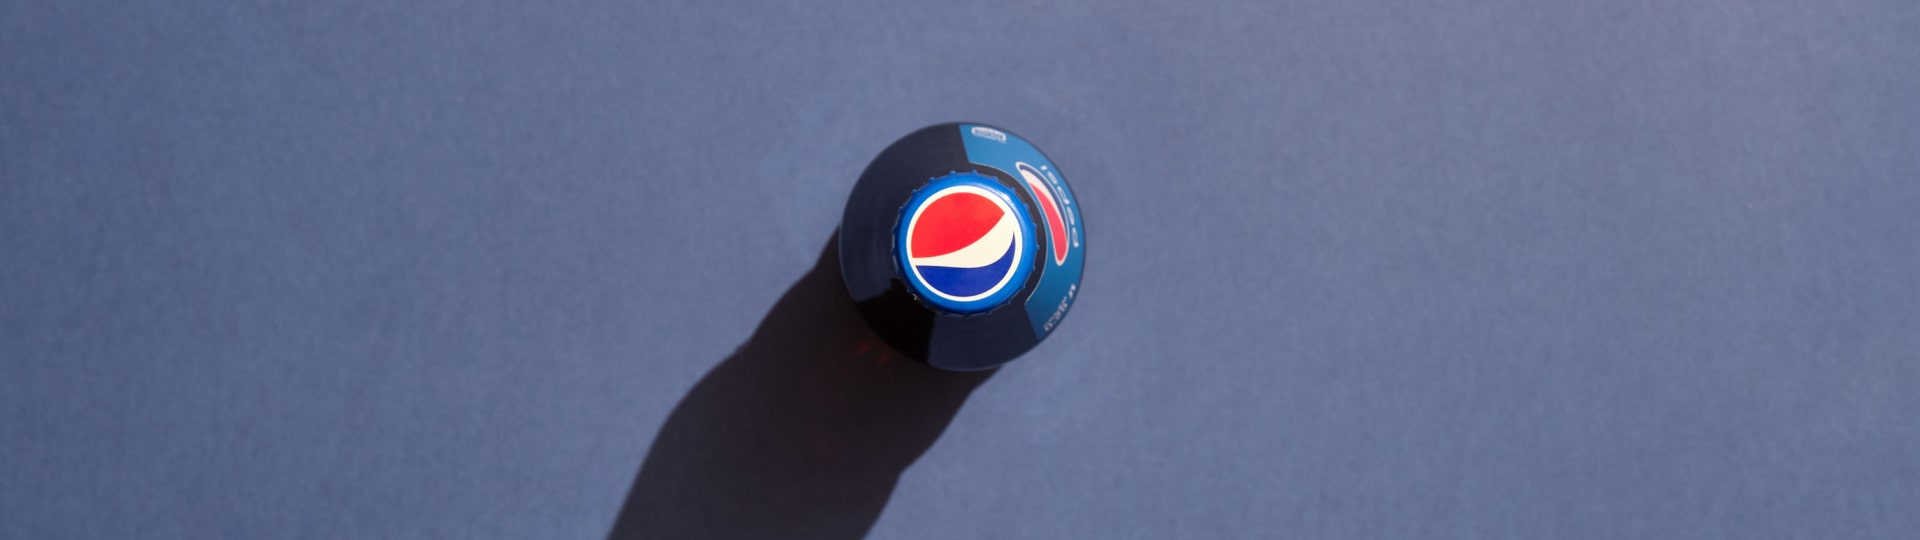 Čtvrtletní zisk PepsiCo se snížil o 61 procent